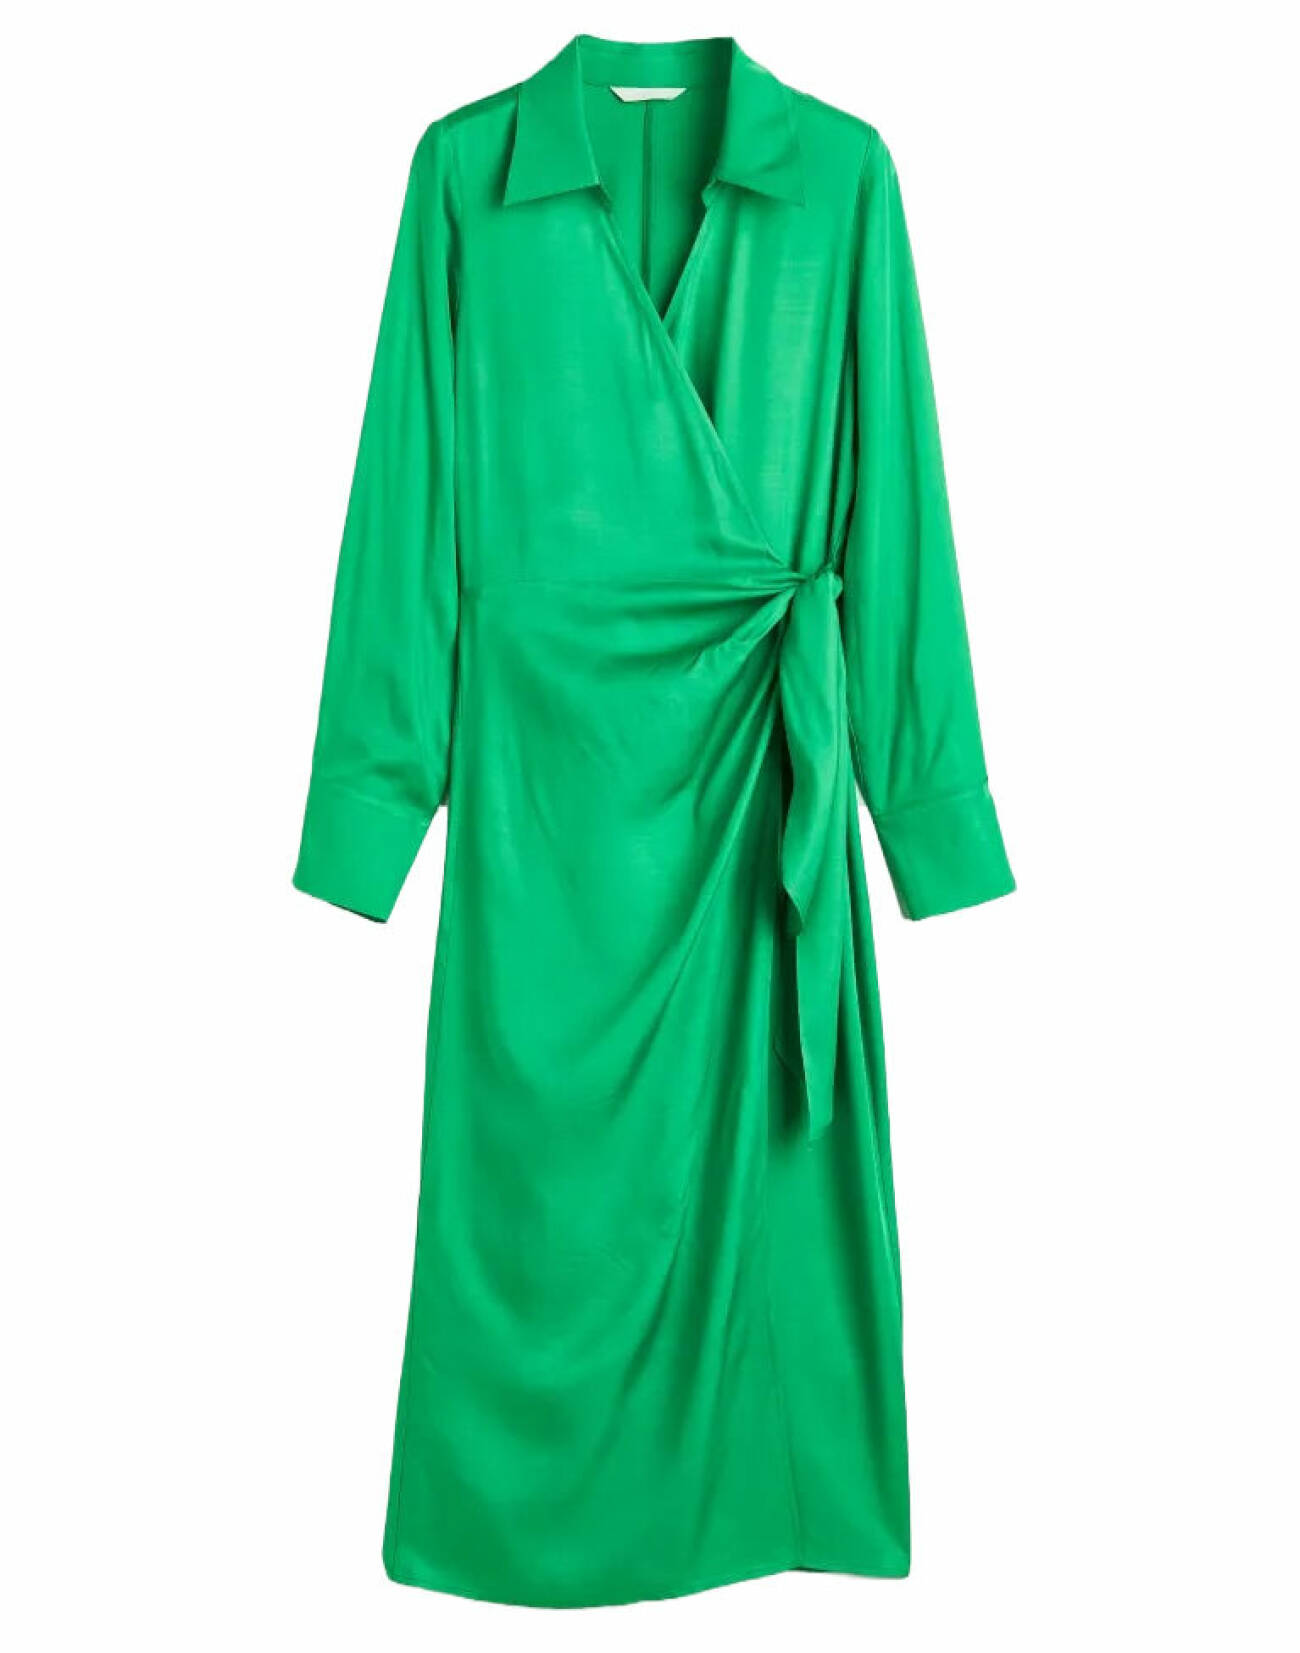 grön omlottklänning i satin från hm